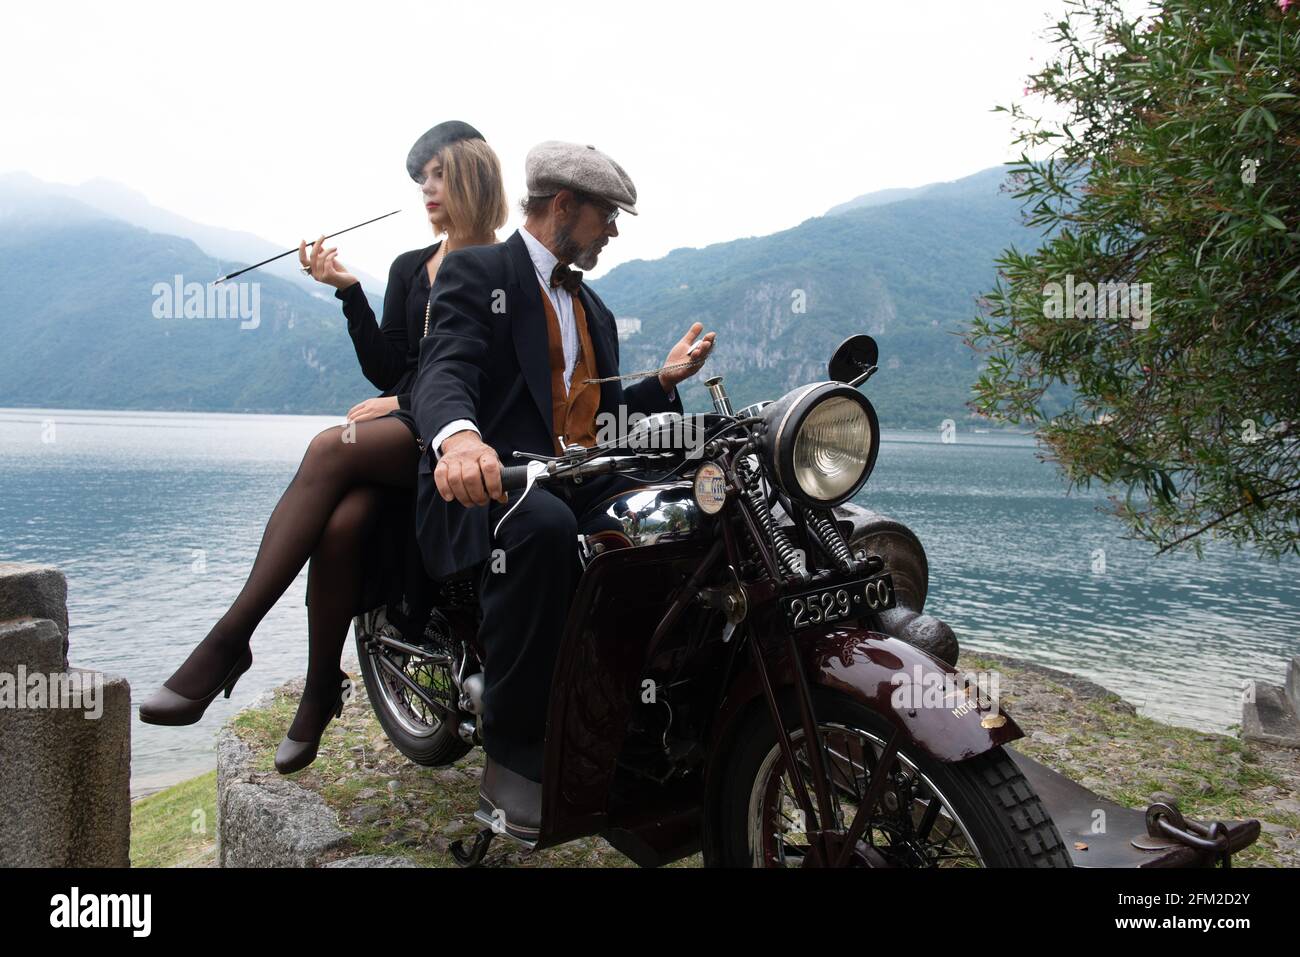 Raduno Moto Guzzi, Mandello del Lario, Lake Como, Lombardia, Italy, Europe Stock Photo